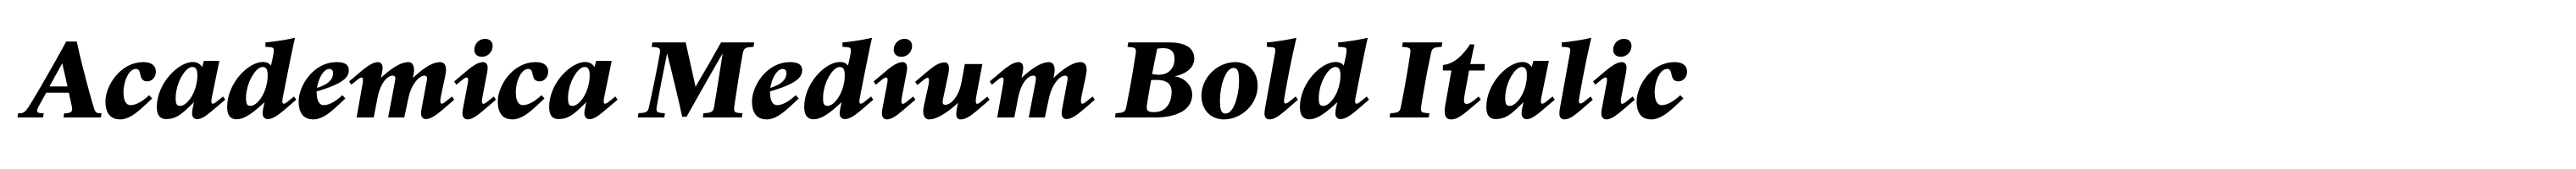 Academica Medium Bold Italic